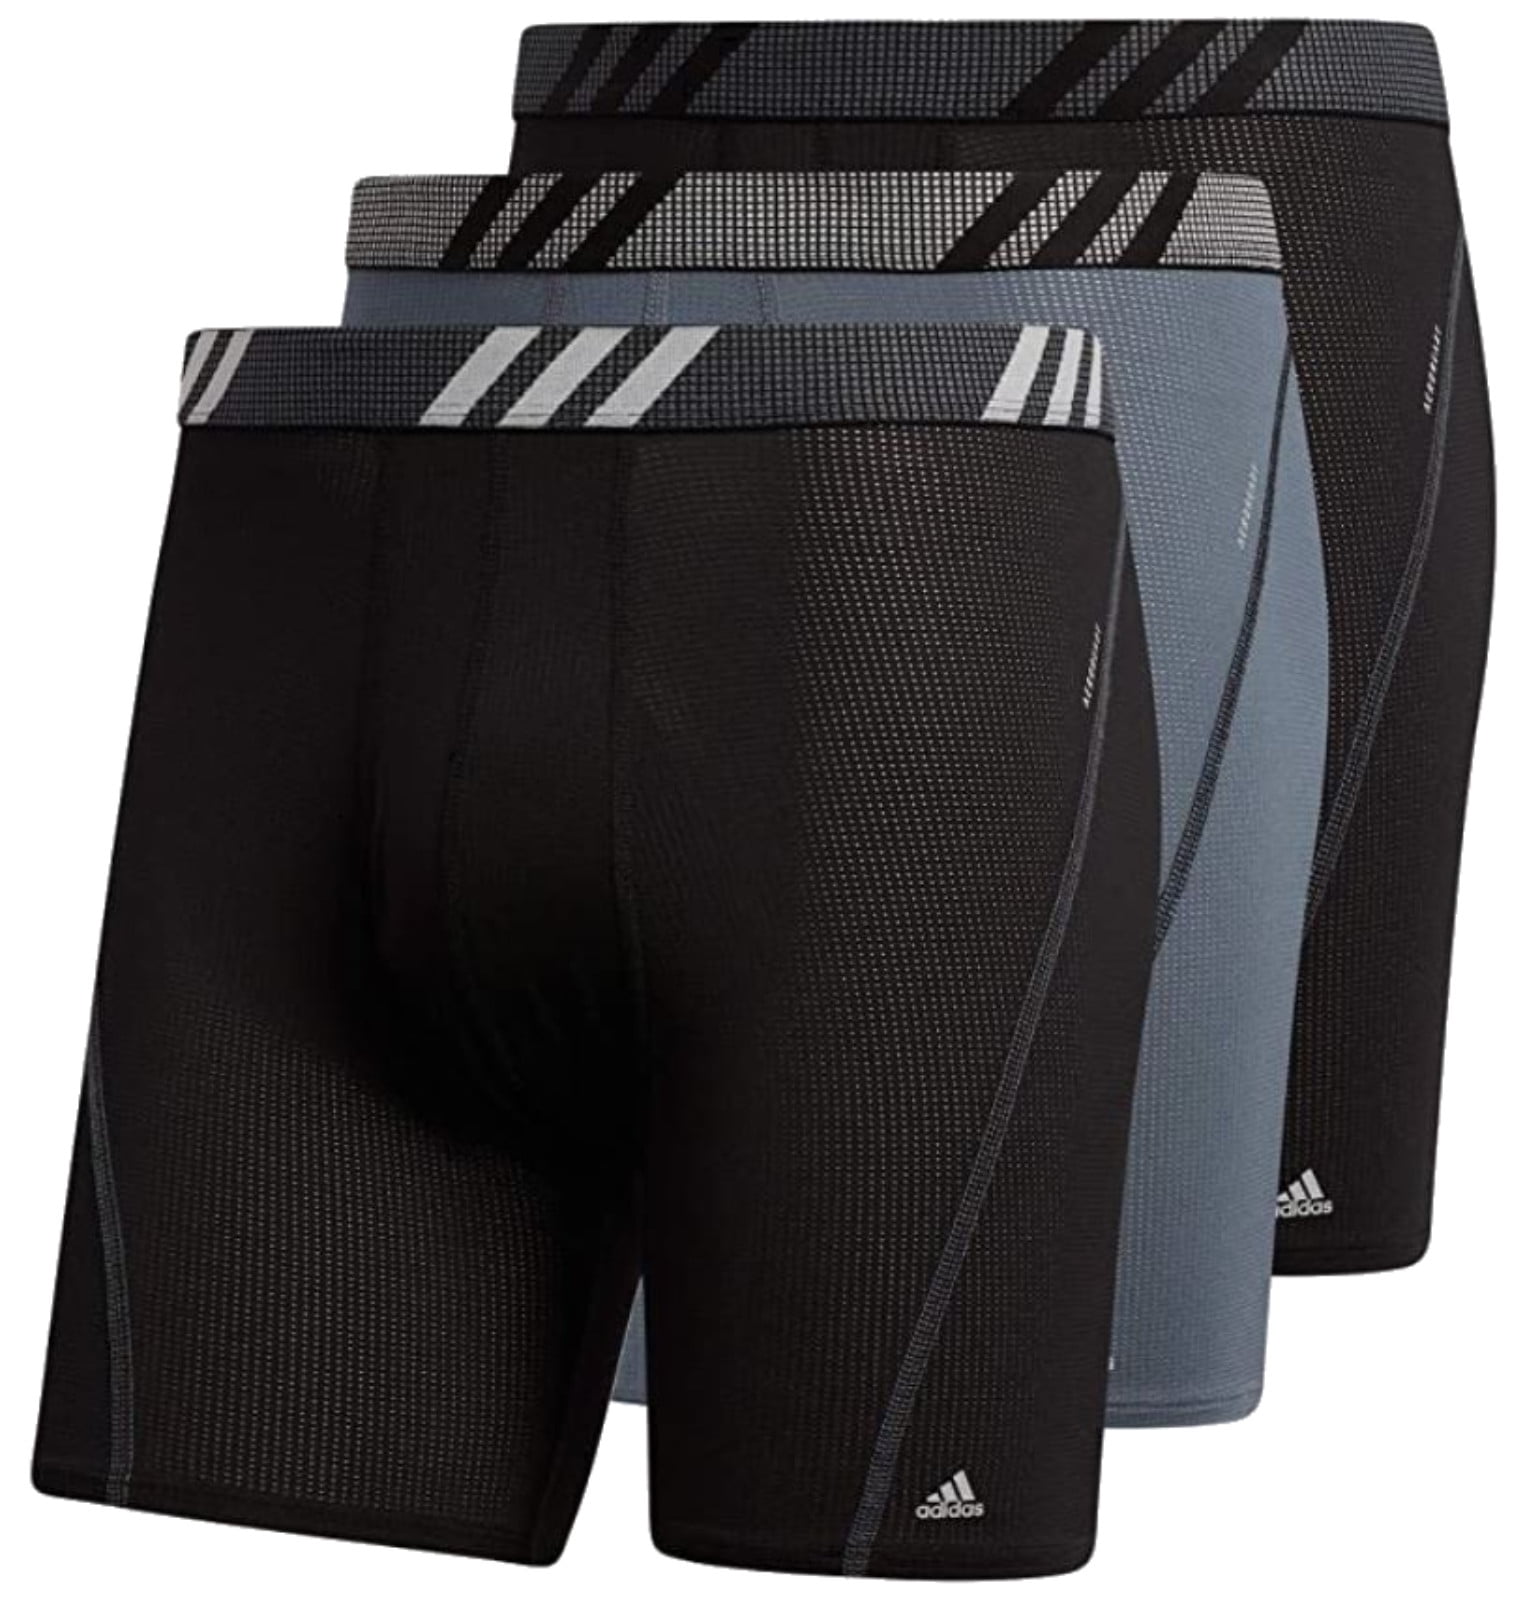 nederlag bestemt Foranderlig Adidas Men's Stretch Cotton Boxer Brief Underwear (3-Pack)-Blue/Grey/Black ( XXL) - Walmart.com